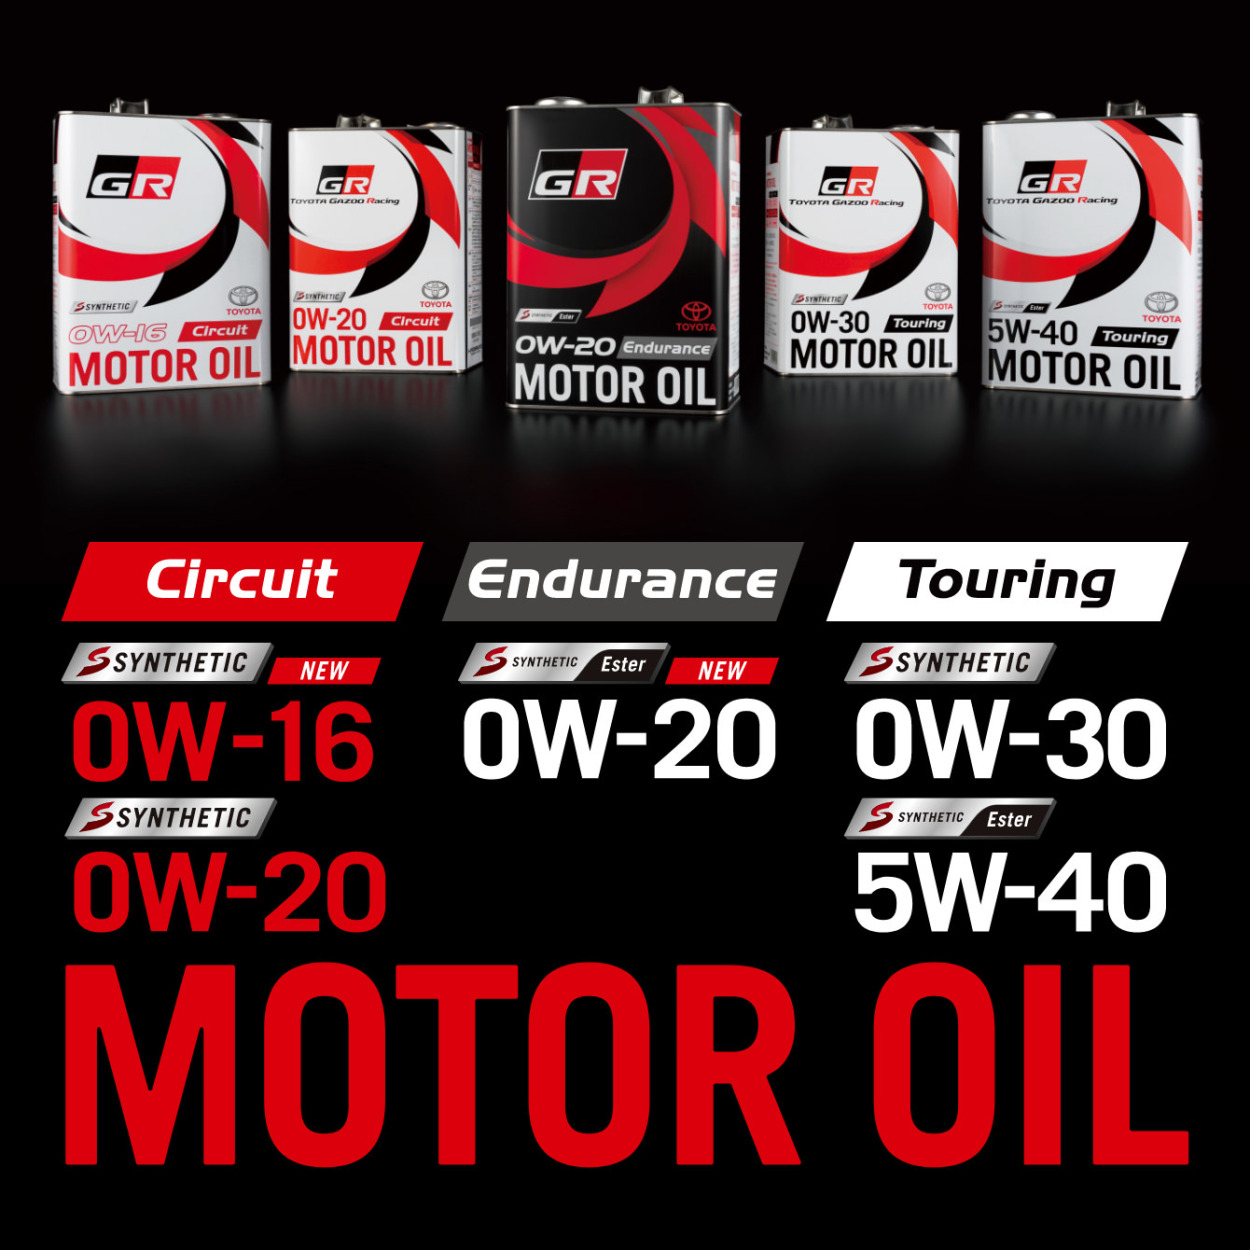 税込】 08880-13505GR Endurance Gazoo Racing 0W-20 4L モーターオイル GR MOTOR OIL  エンジンオイル